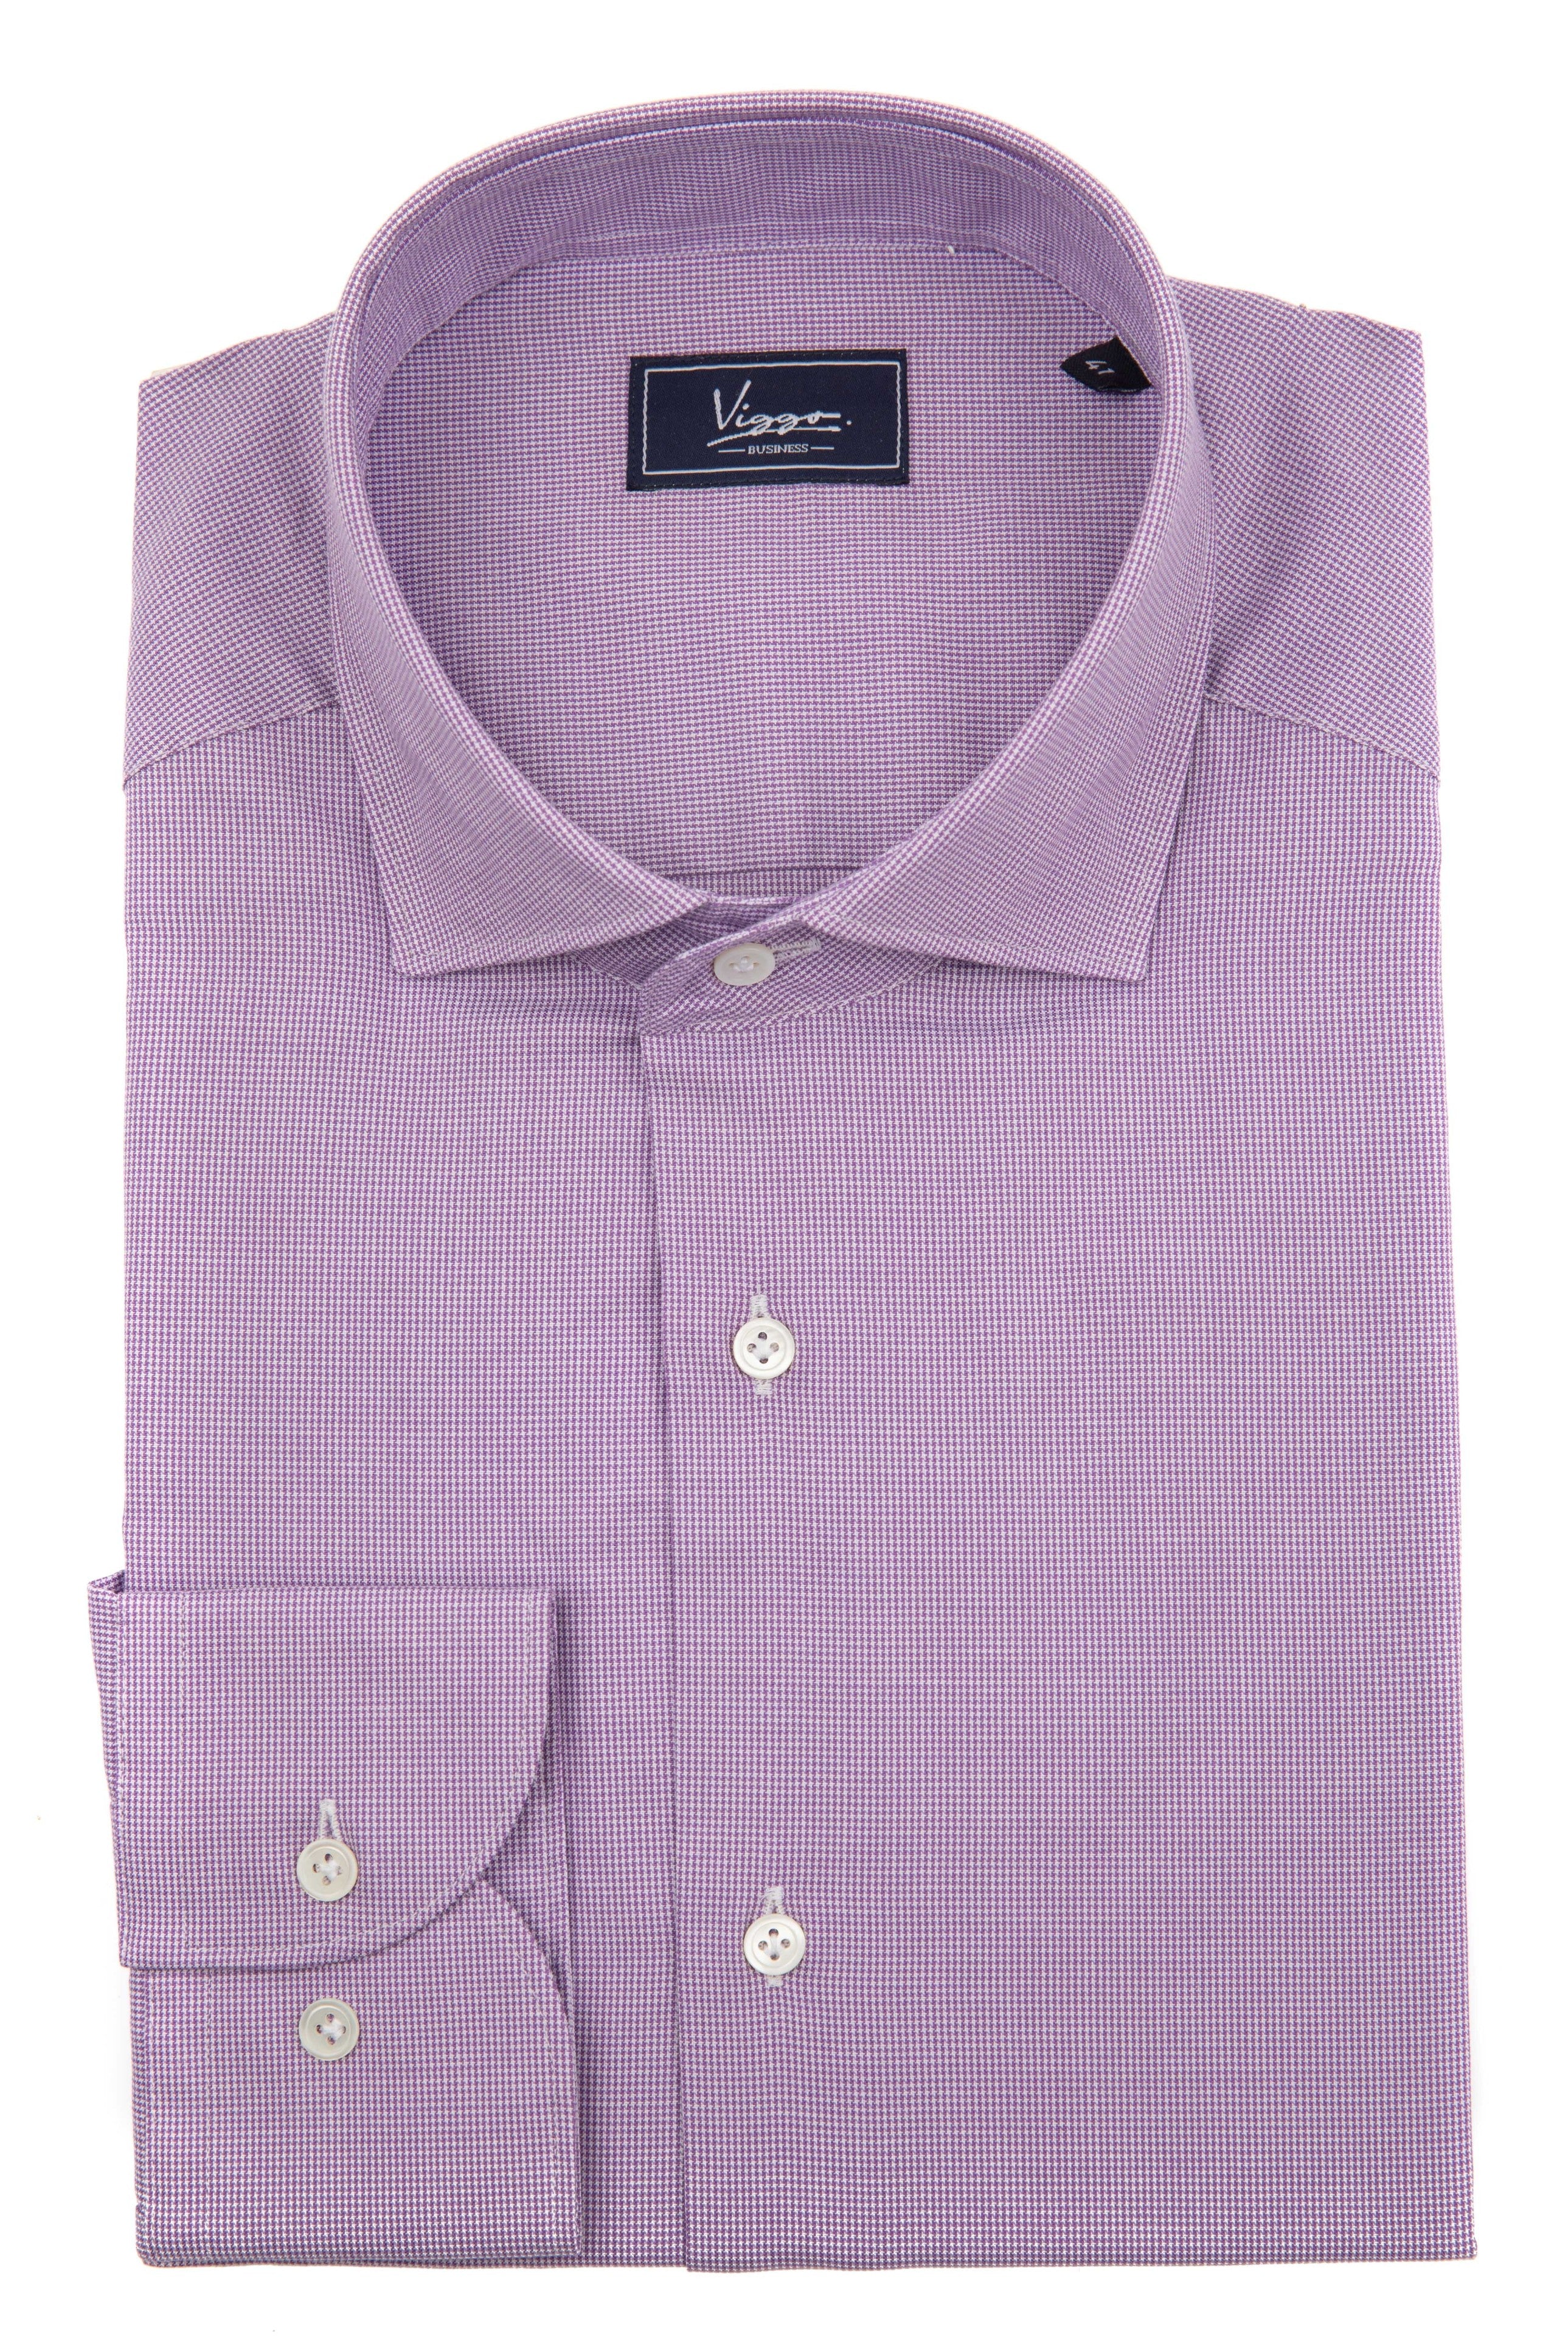 上質な織り目加工の紫のビジネス シャツ ホワイト